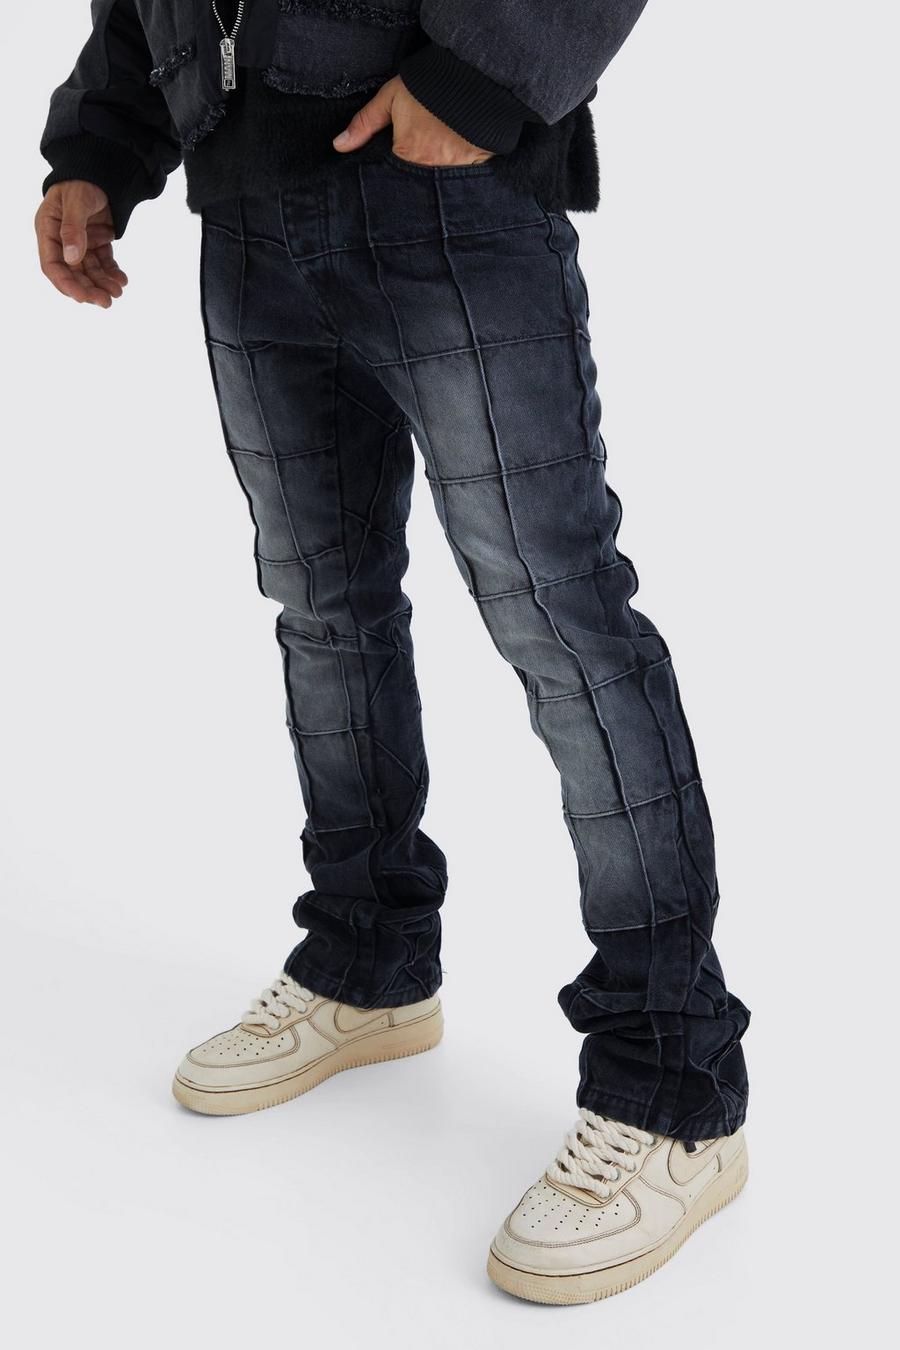 Washed black Jeans i slim fit med paneler